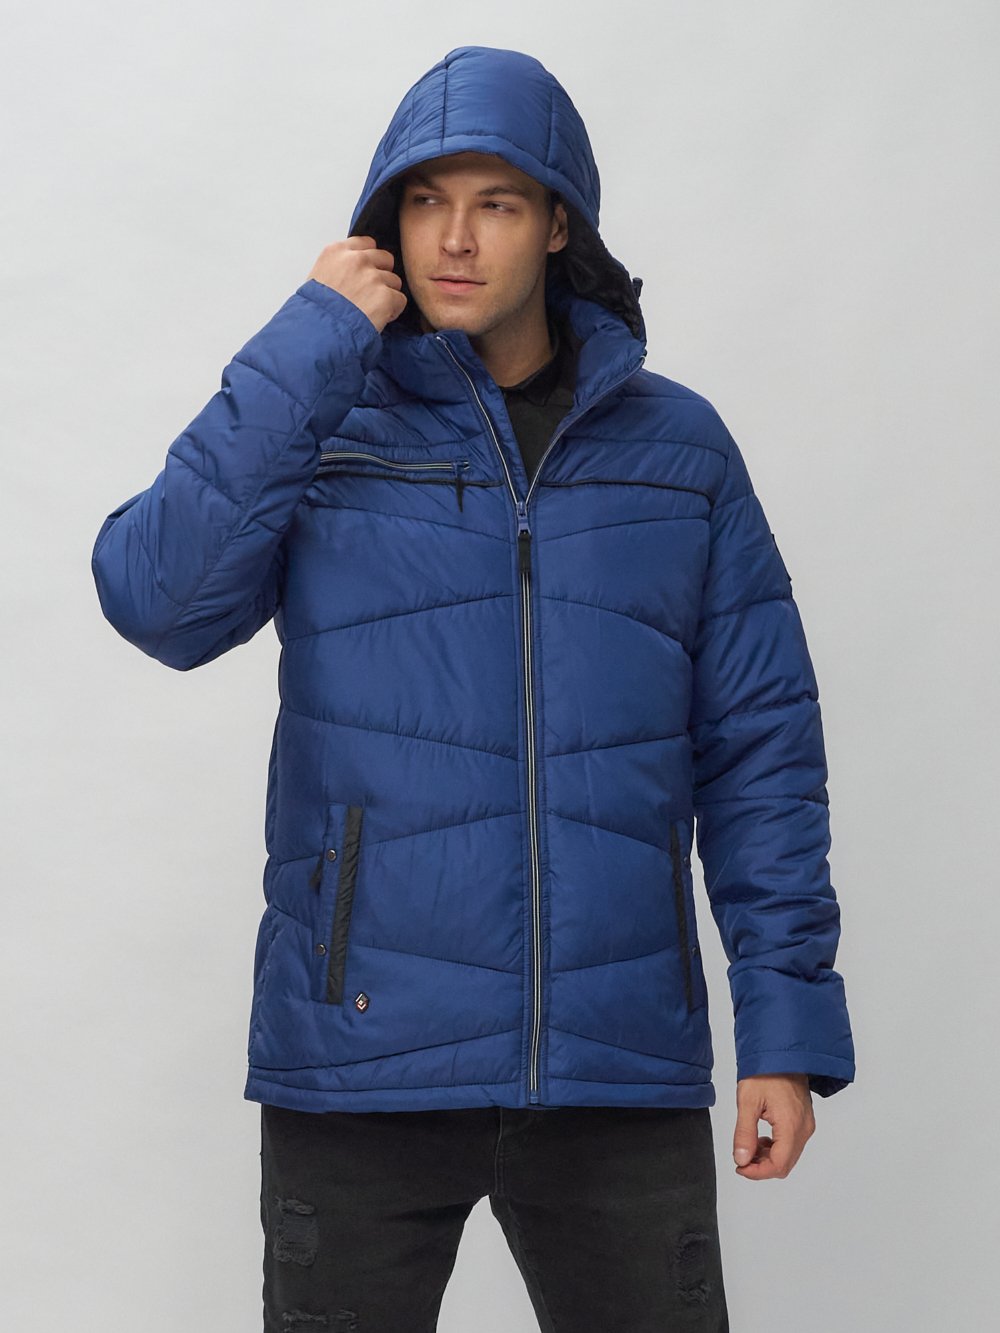 Купить куртку мужскую спортивную весеннюю оптом от производителя недорого в Москве 62188S 1